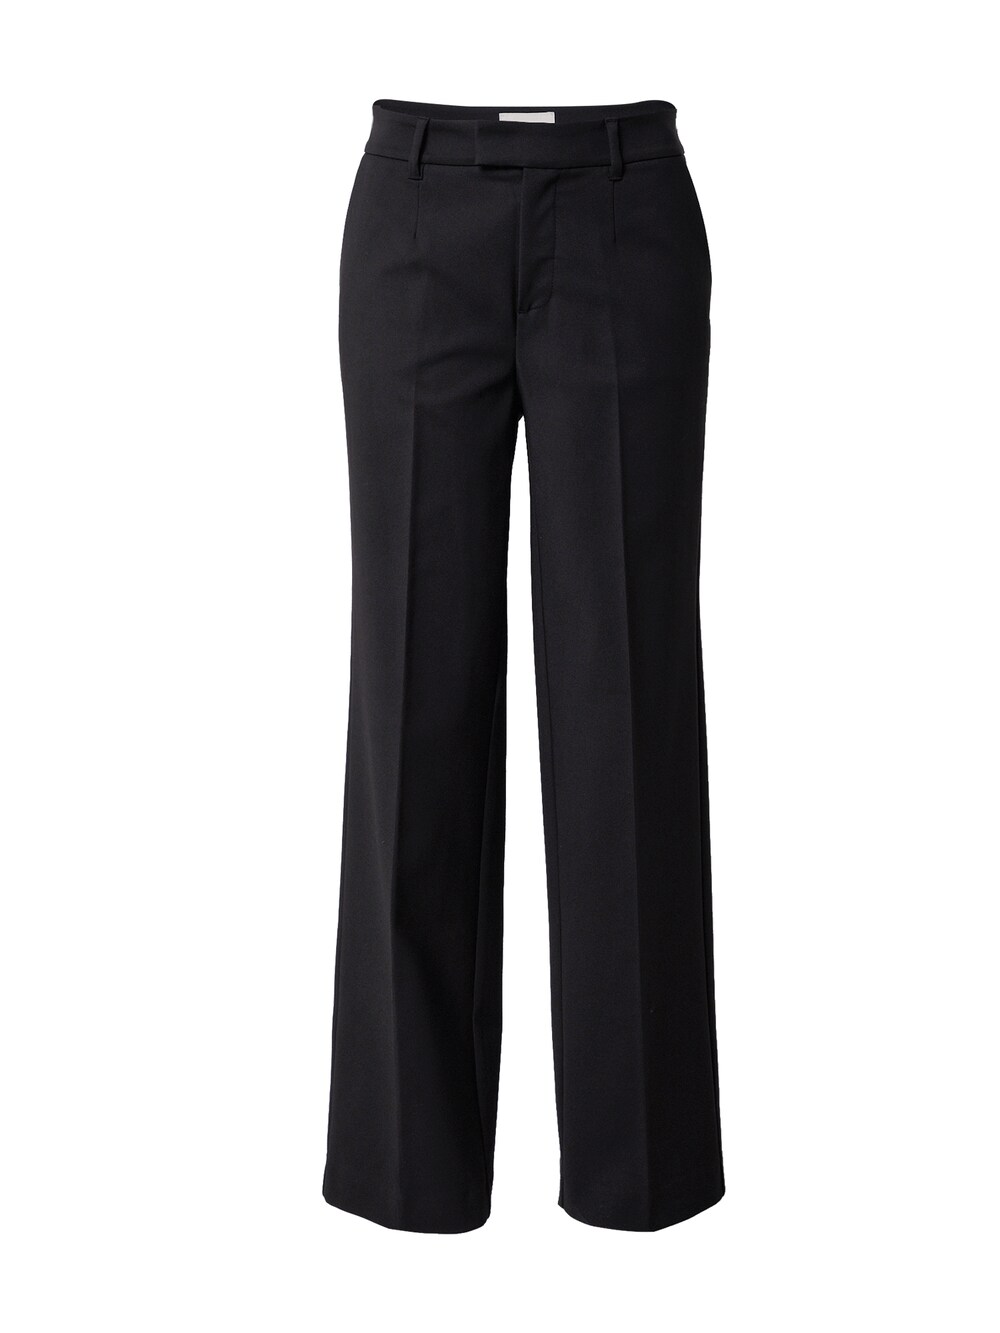 Широкие брюки со складками Pulz Jeans BINDY, черный